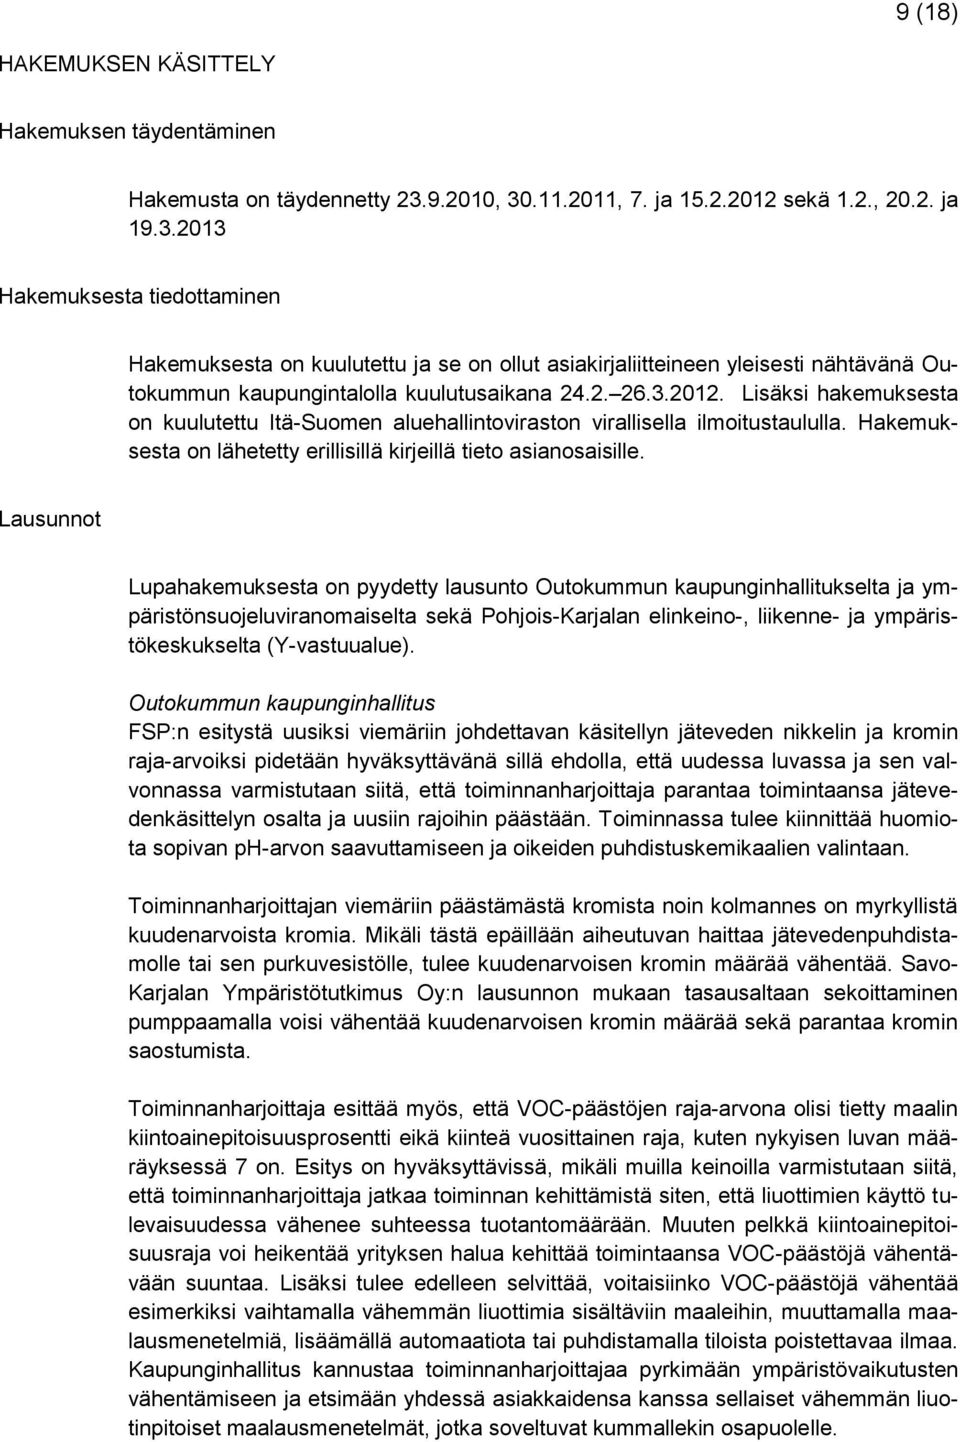 2. 26.3.2012. Lisäksi hakemuksesta on kuulutettu Itä-Suomen aluehallintoviraston virallisella ilmoitustaululla. Hakemuksesta on lähetetty erillisillä kirjeillä tieto asianosaisille.